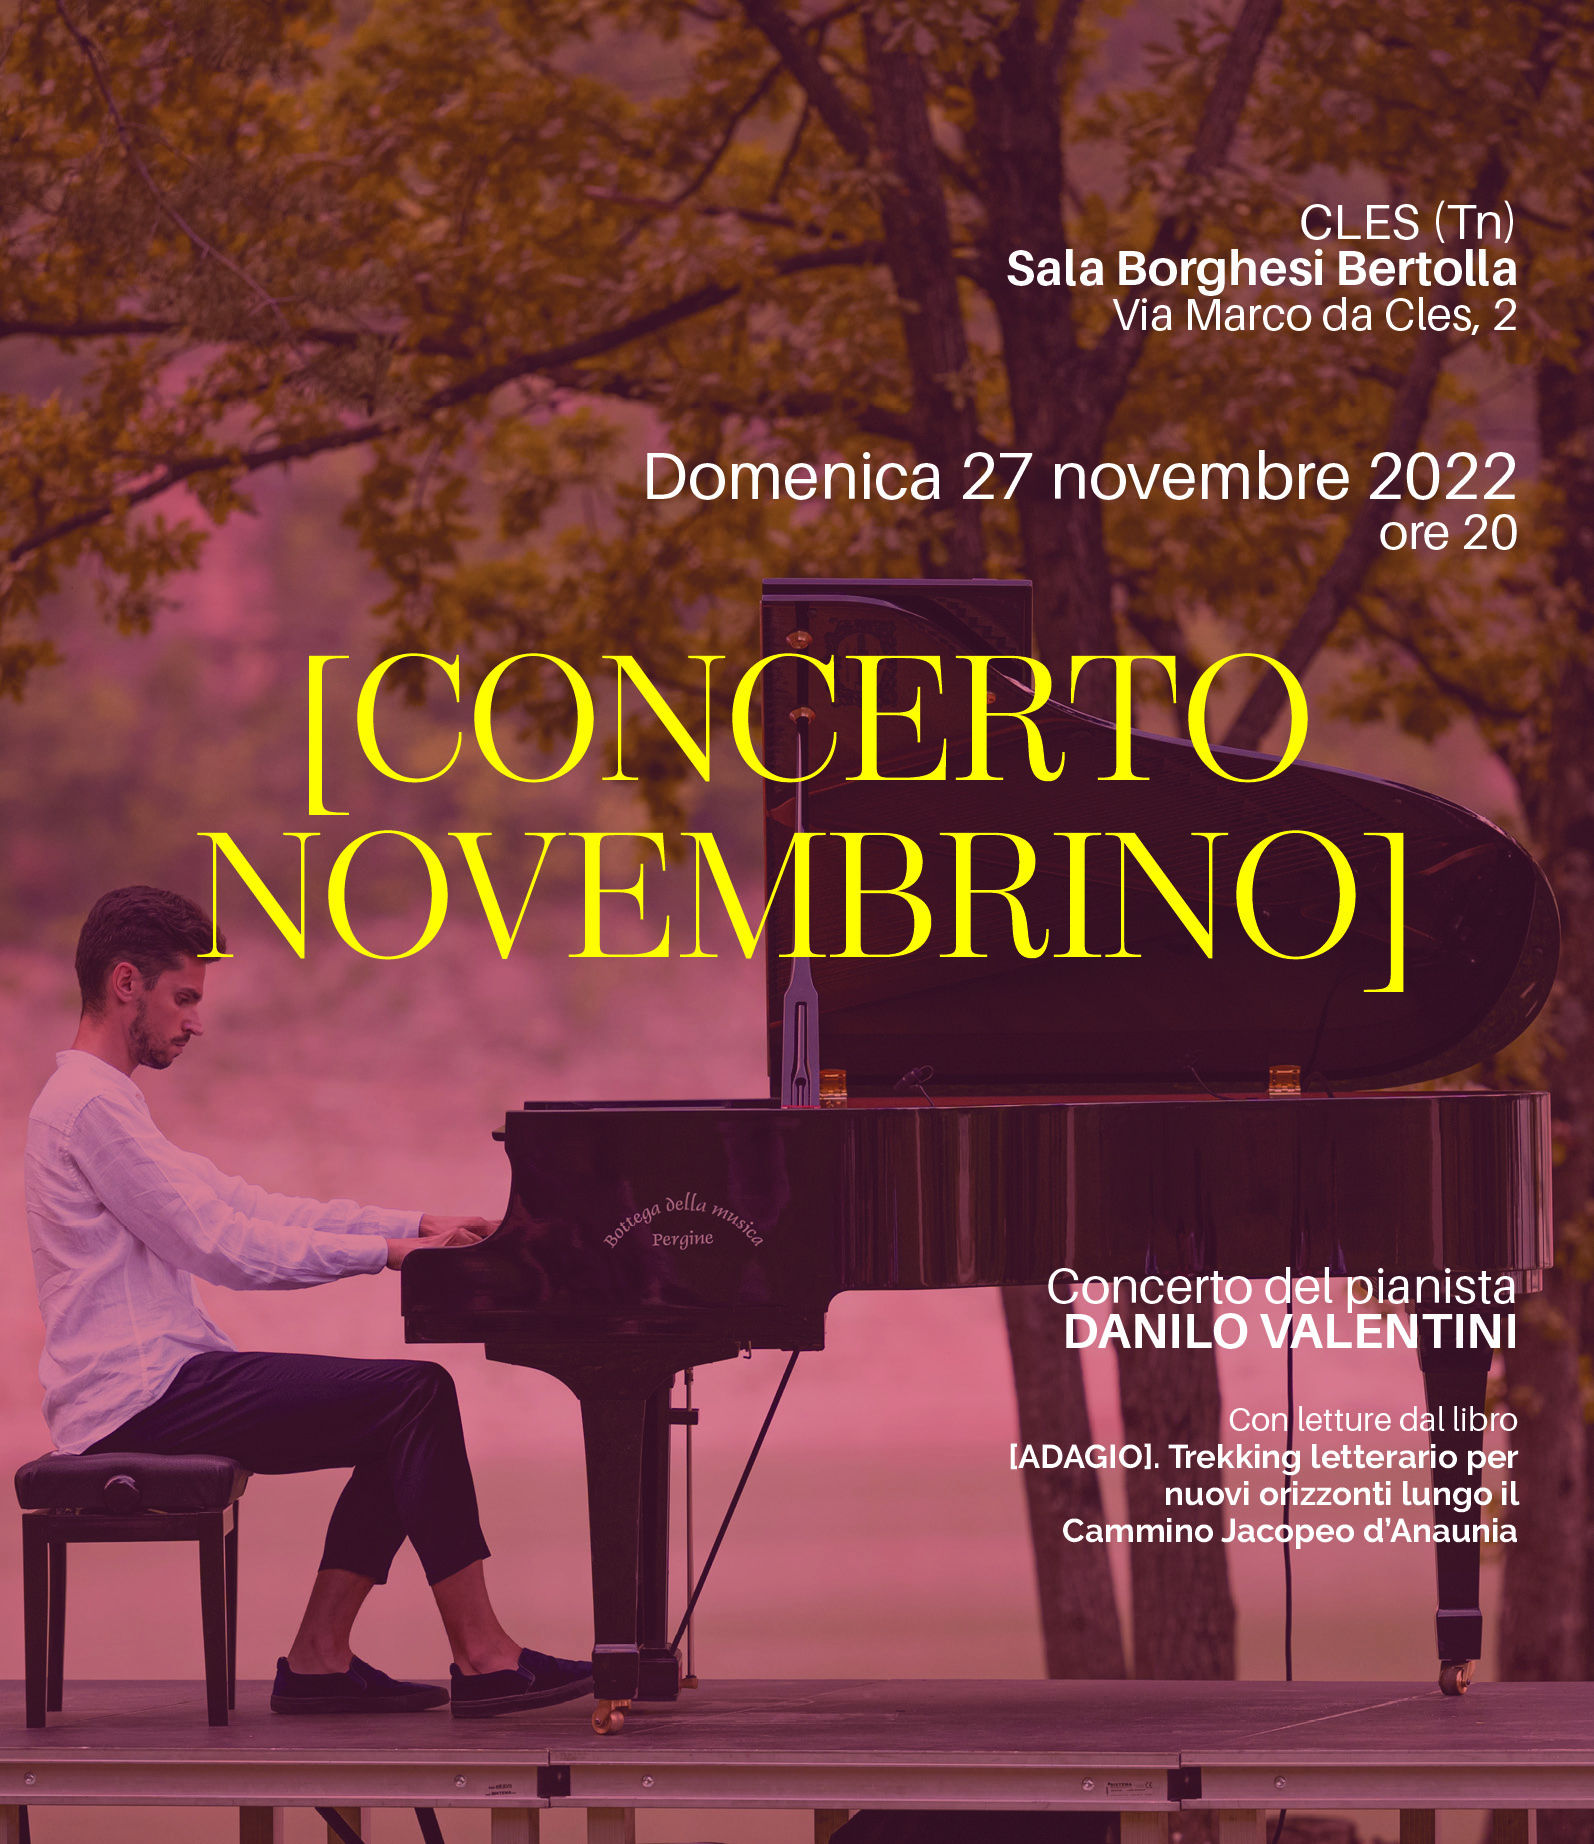 Concerto Novembrino_Immagine social verticale